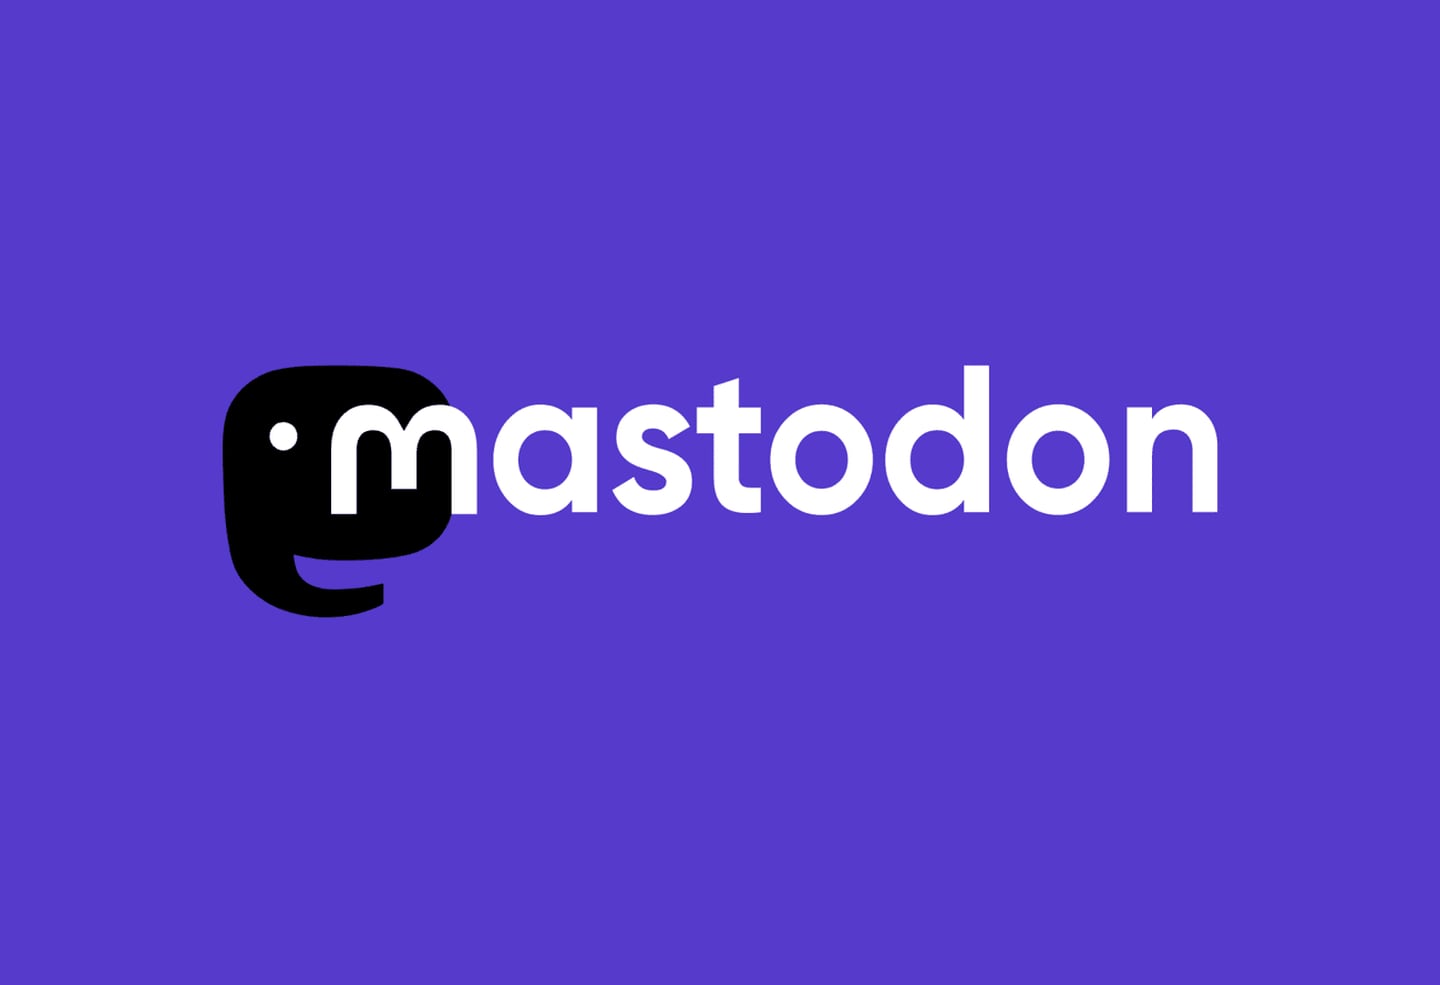 Mastodon es una plataforma de redes sociales descentralizada y de código abierto, creada como una alternativa a Twitter